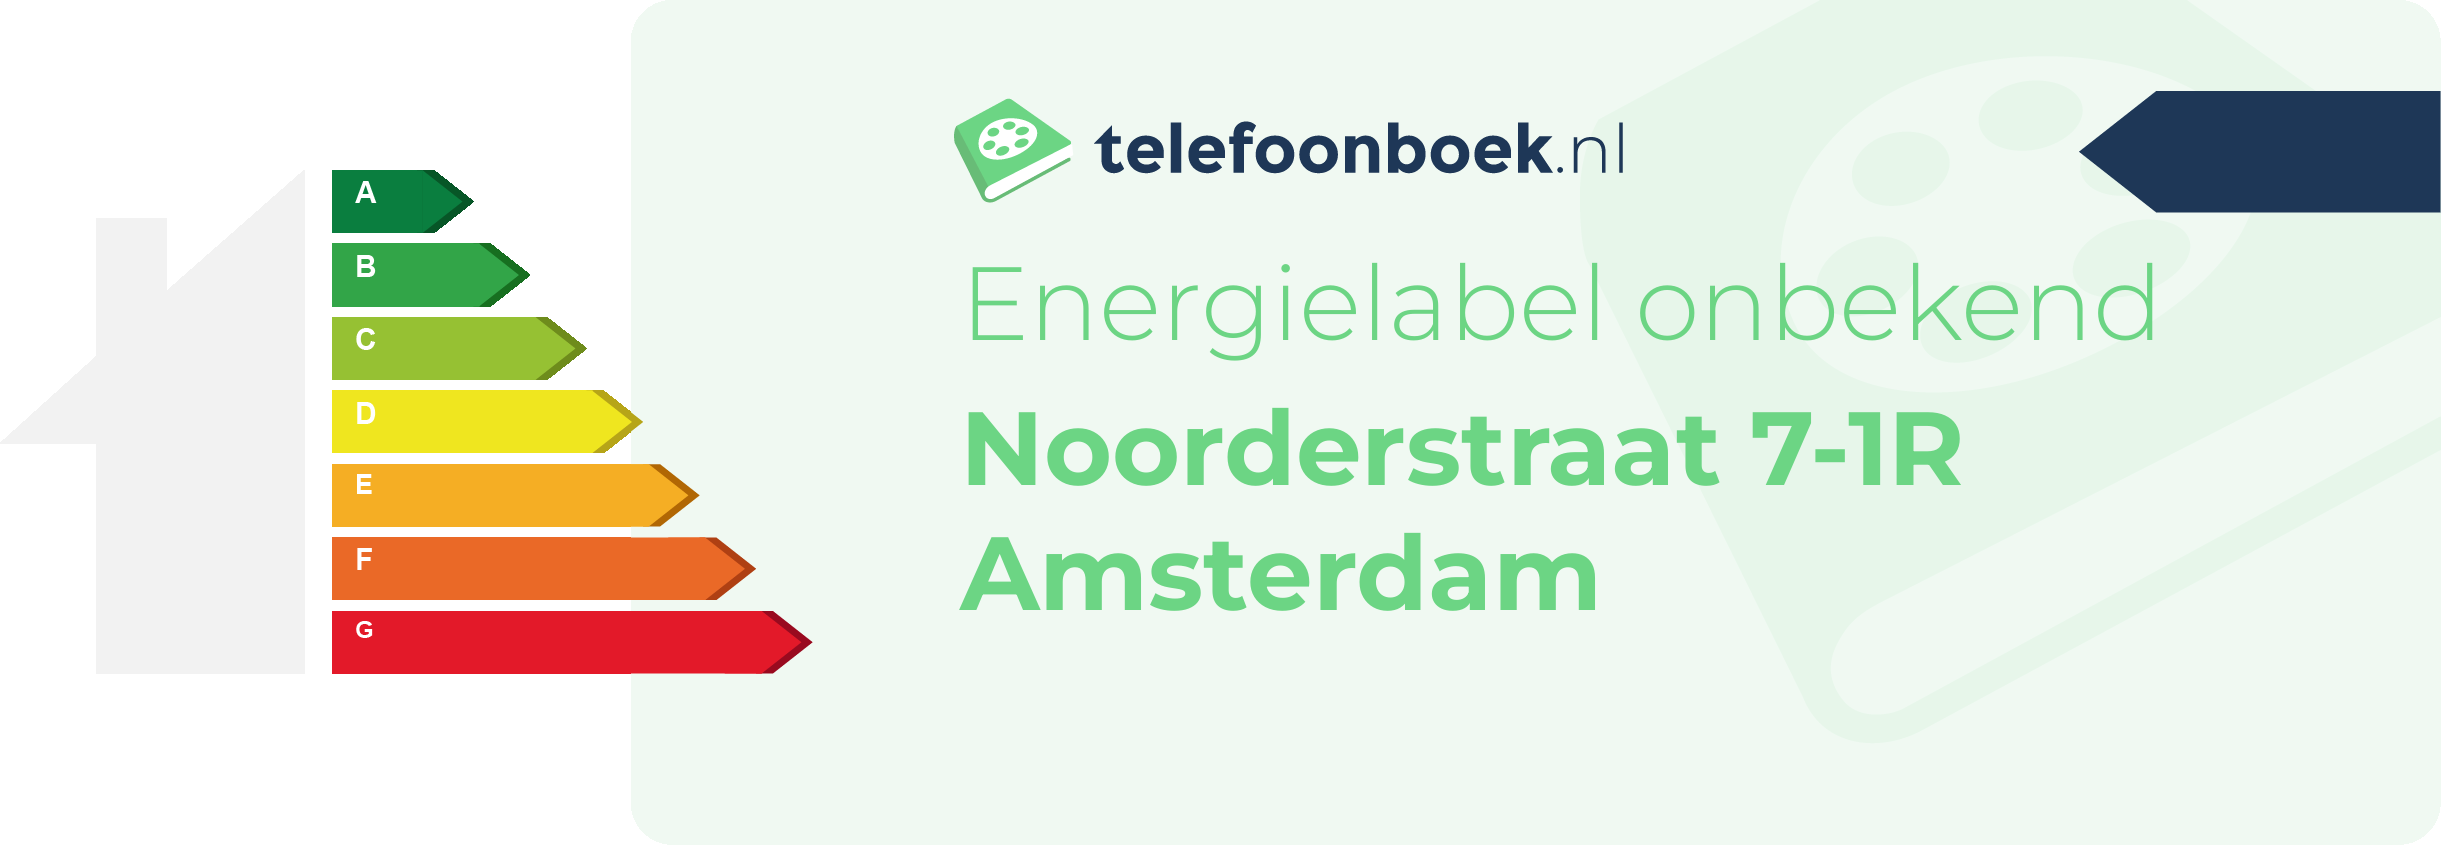 Energielabel Noorderstraat 7-1R Amsterdam